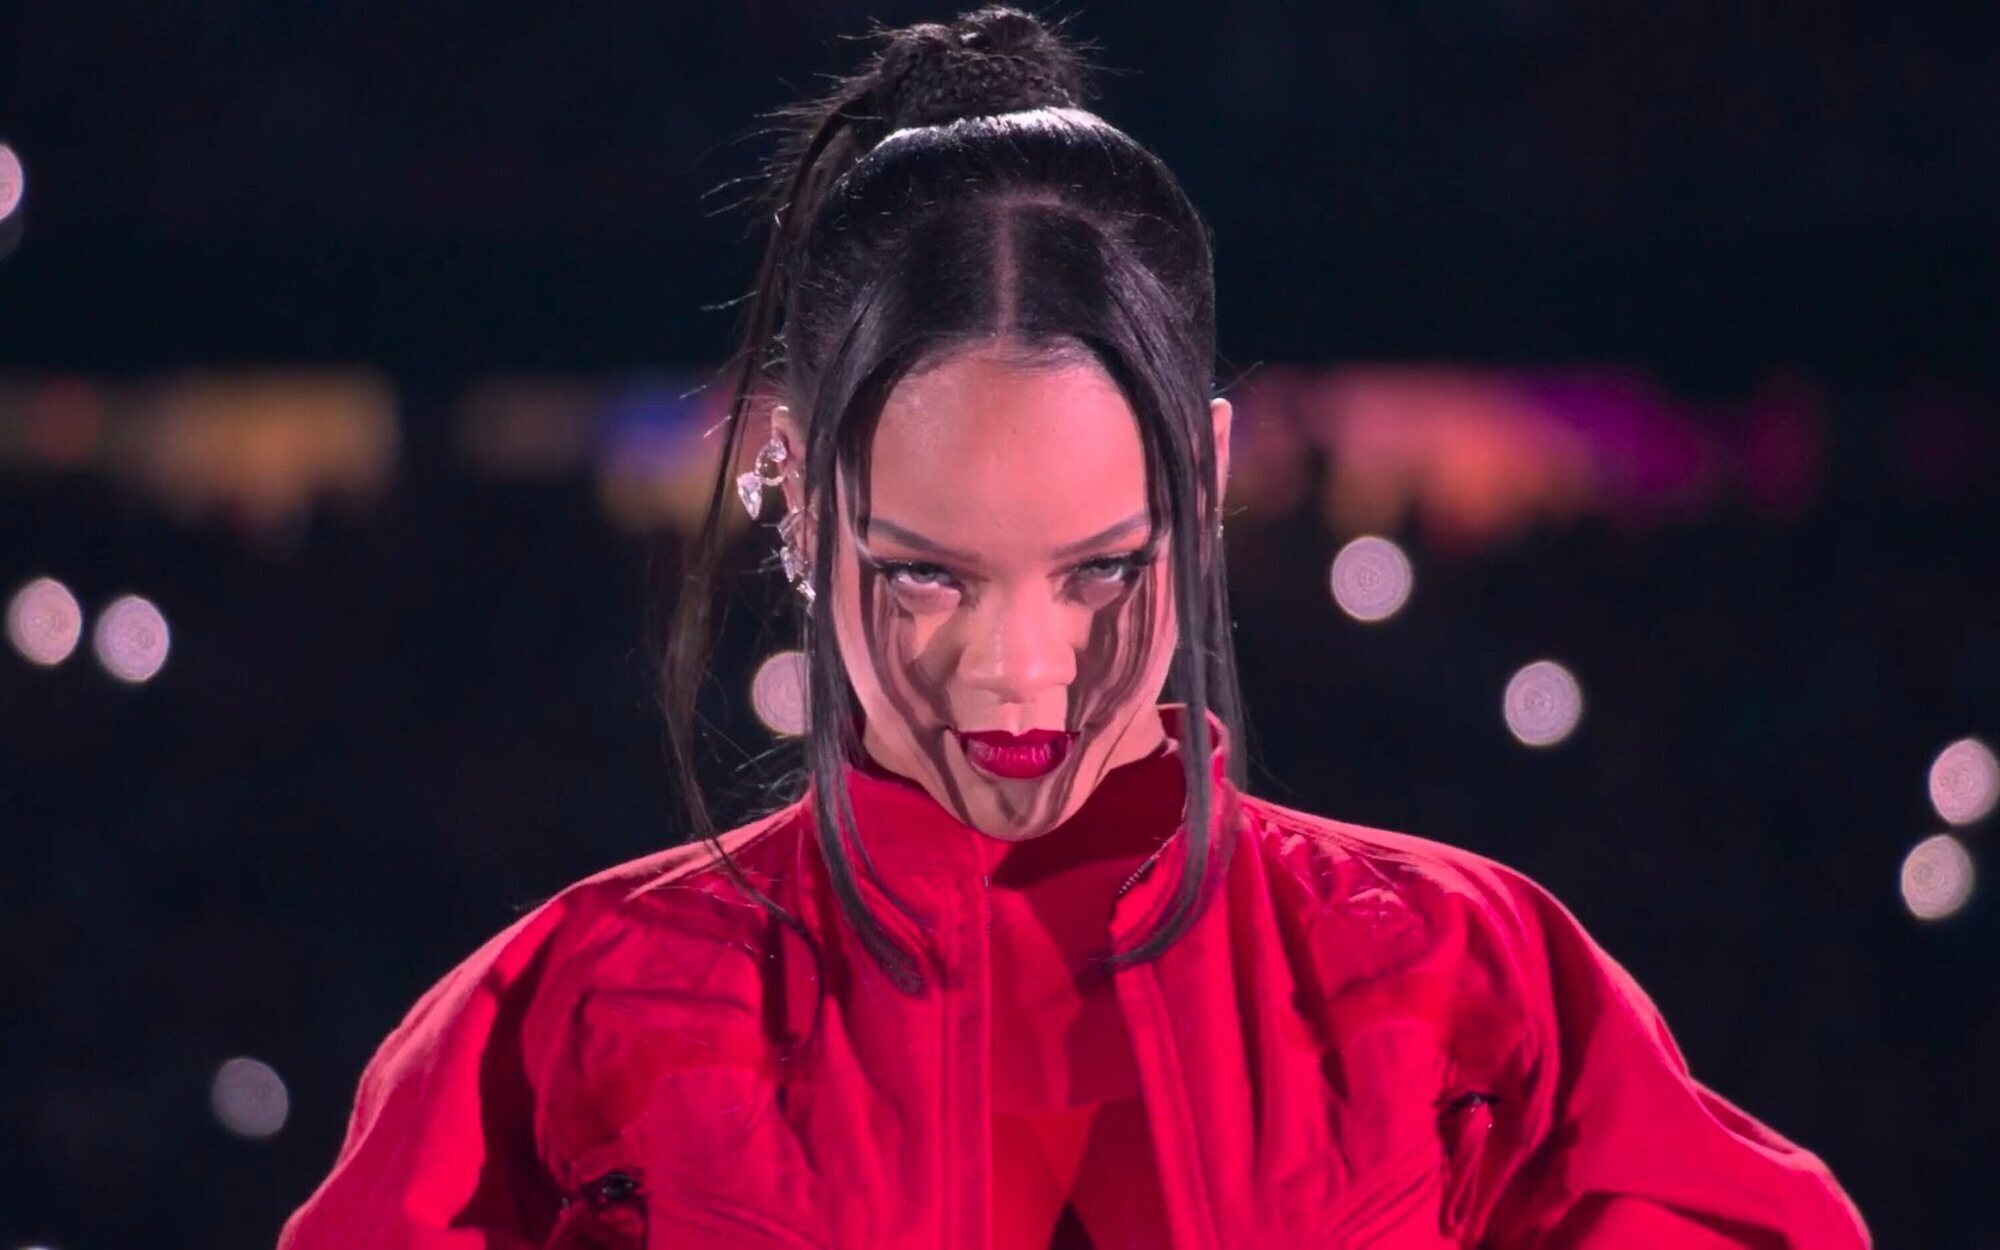 Así fue la impactante actuación de Rihanna en la Super Bowl 2023 donde voló literalmente por los aires